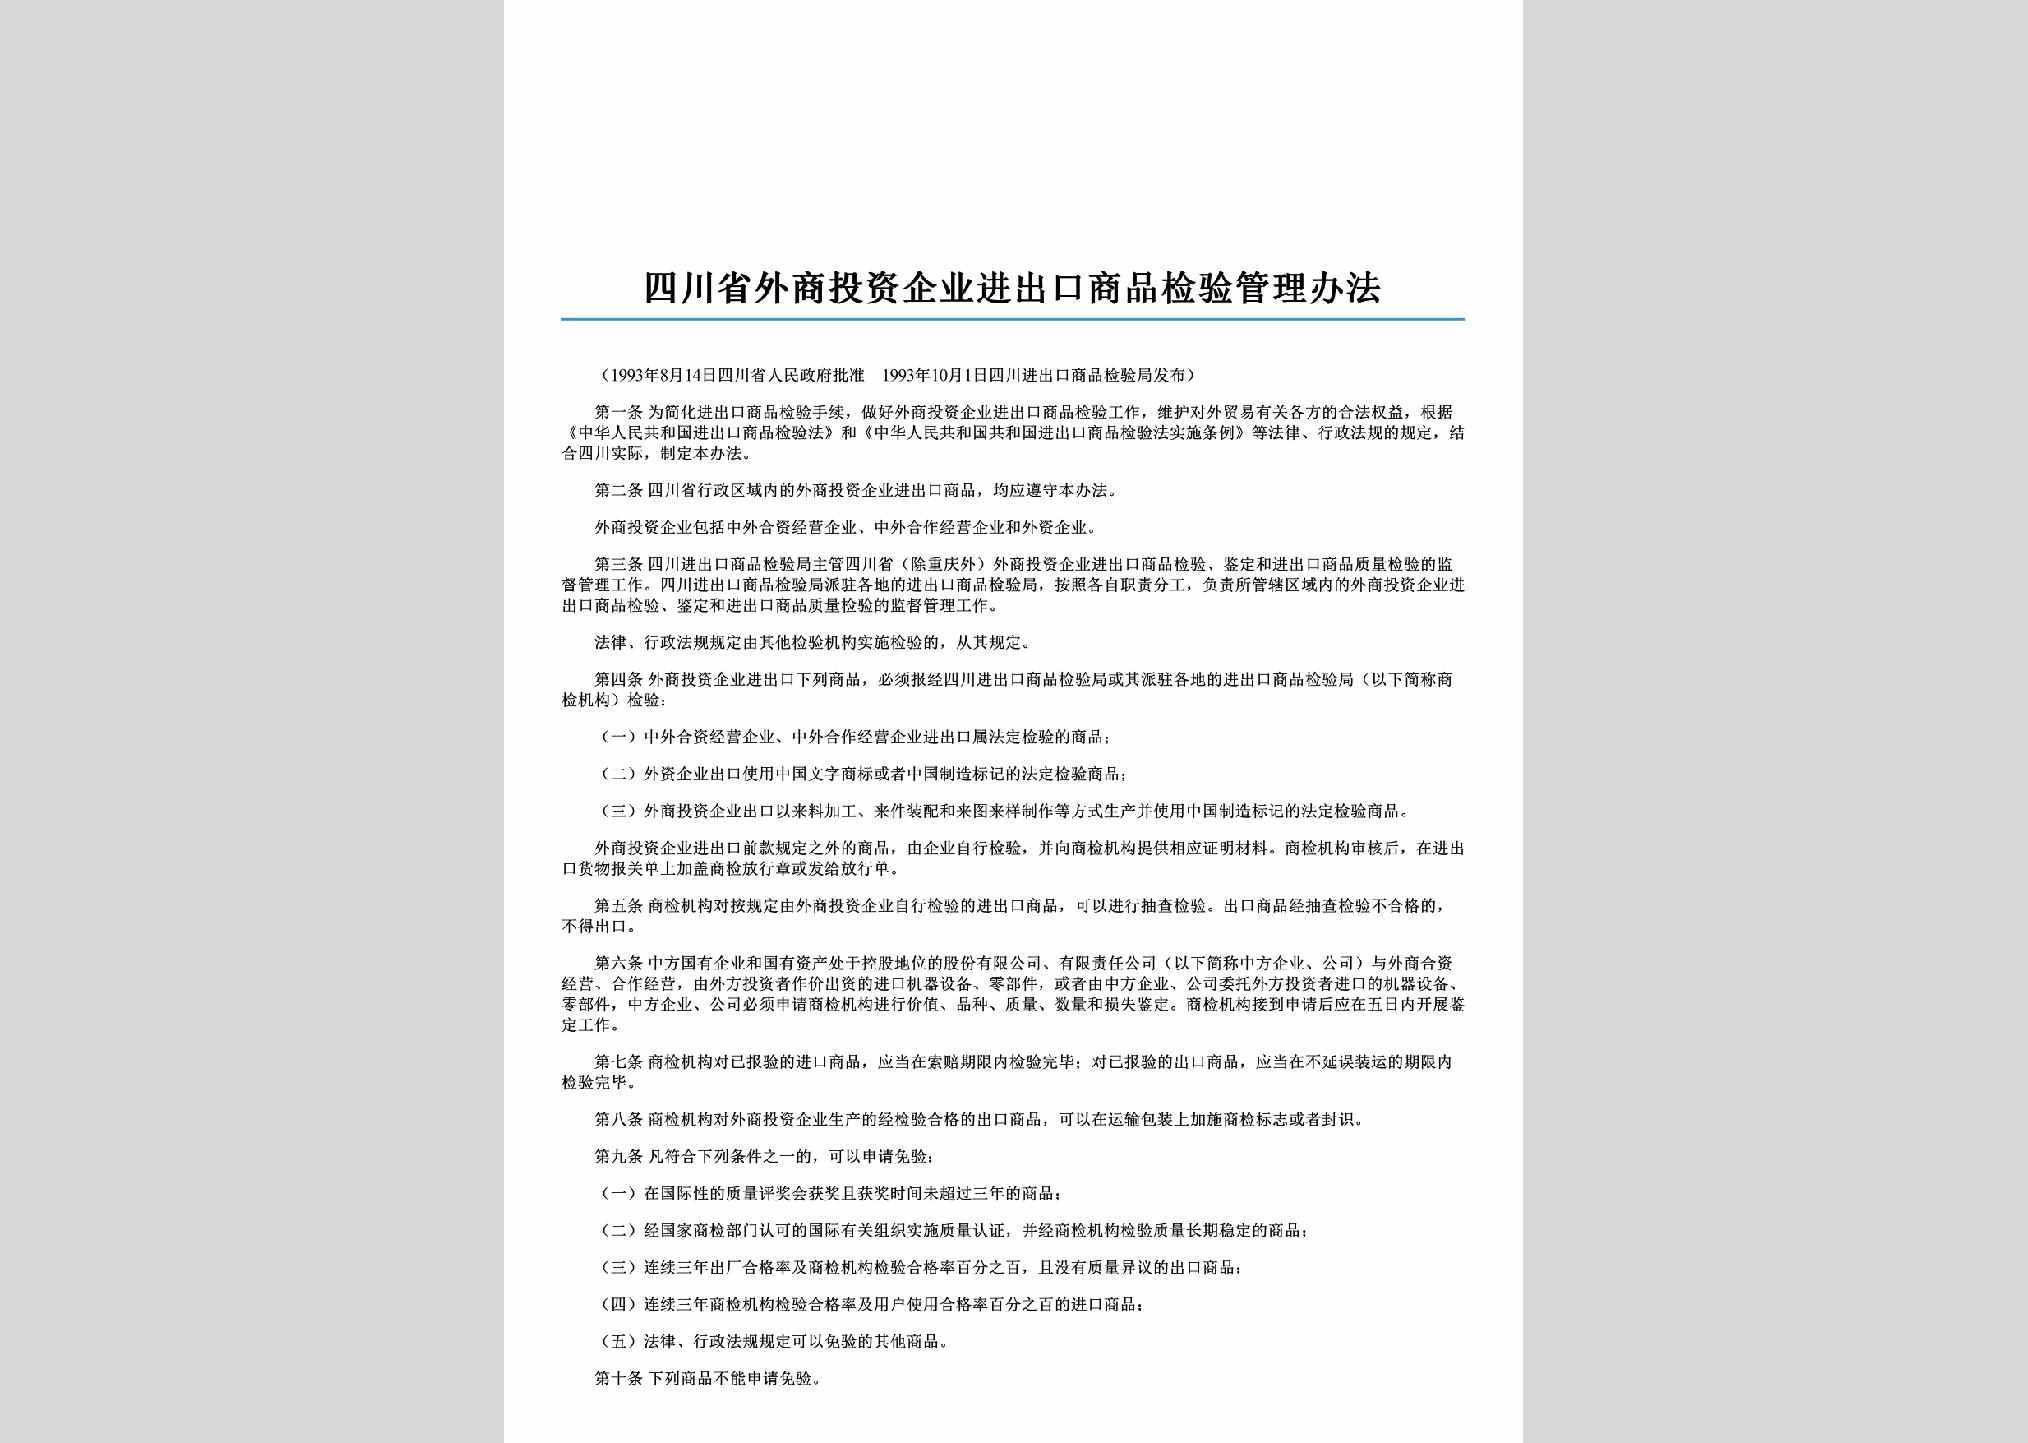 SC-QYSPJYGL-2006：四川省外商投资企业进出口商品检验管理办法